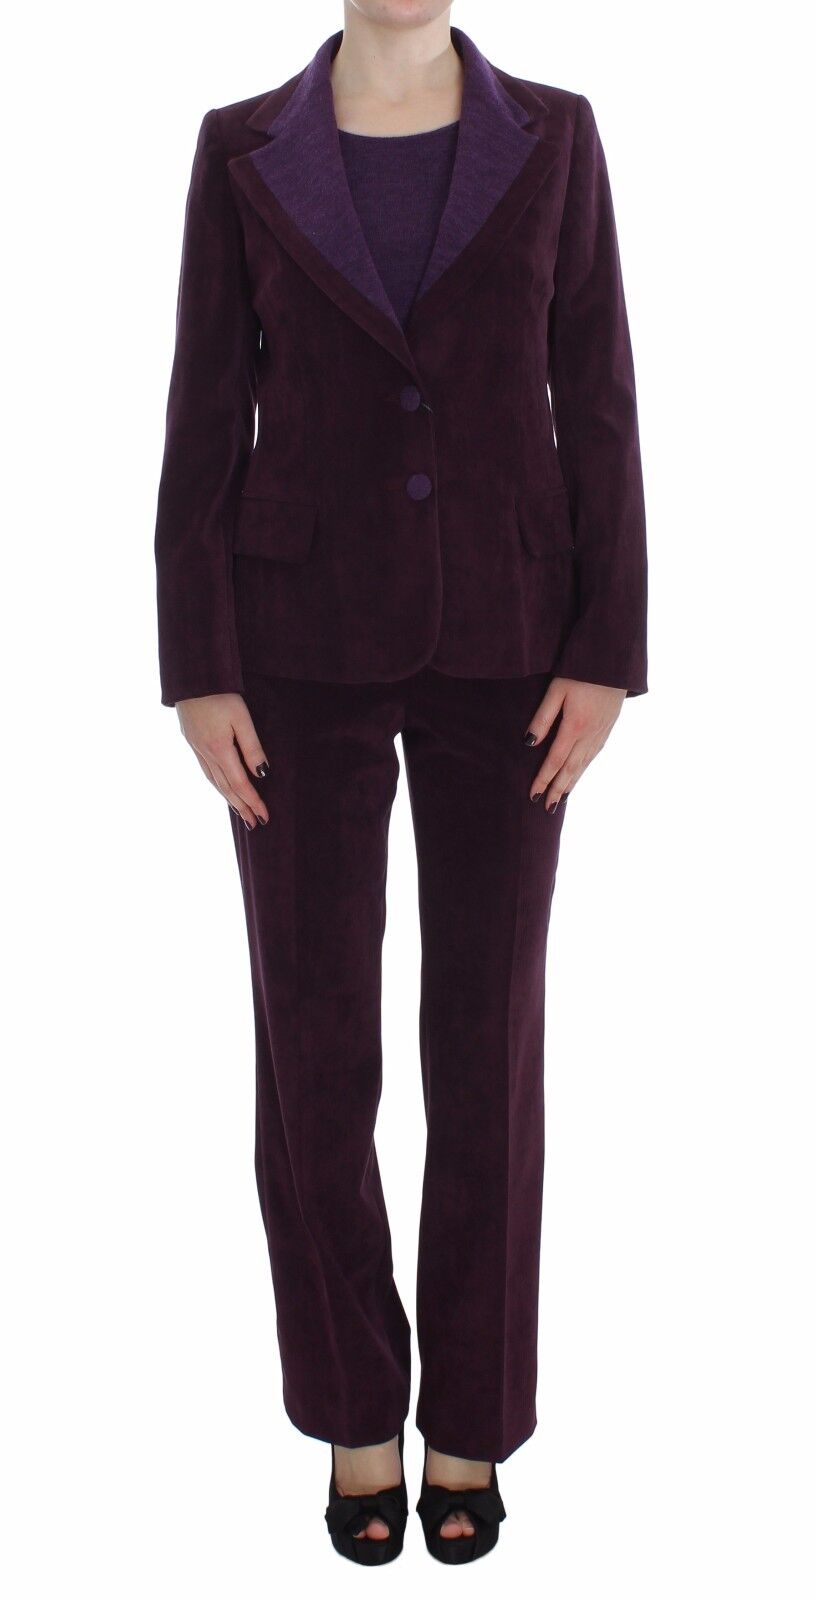 BENCIVENGA Костюм, пиджак, брюки, рубашка, фиолетовый шерстяной комплект s. IT42 / US8 / M Рекомендуемая розничная цена 660 долларов США.